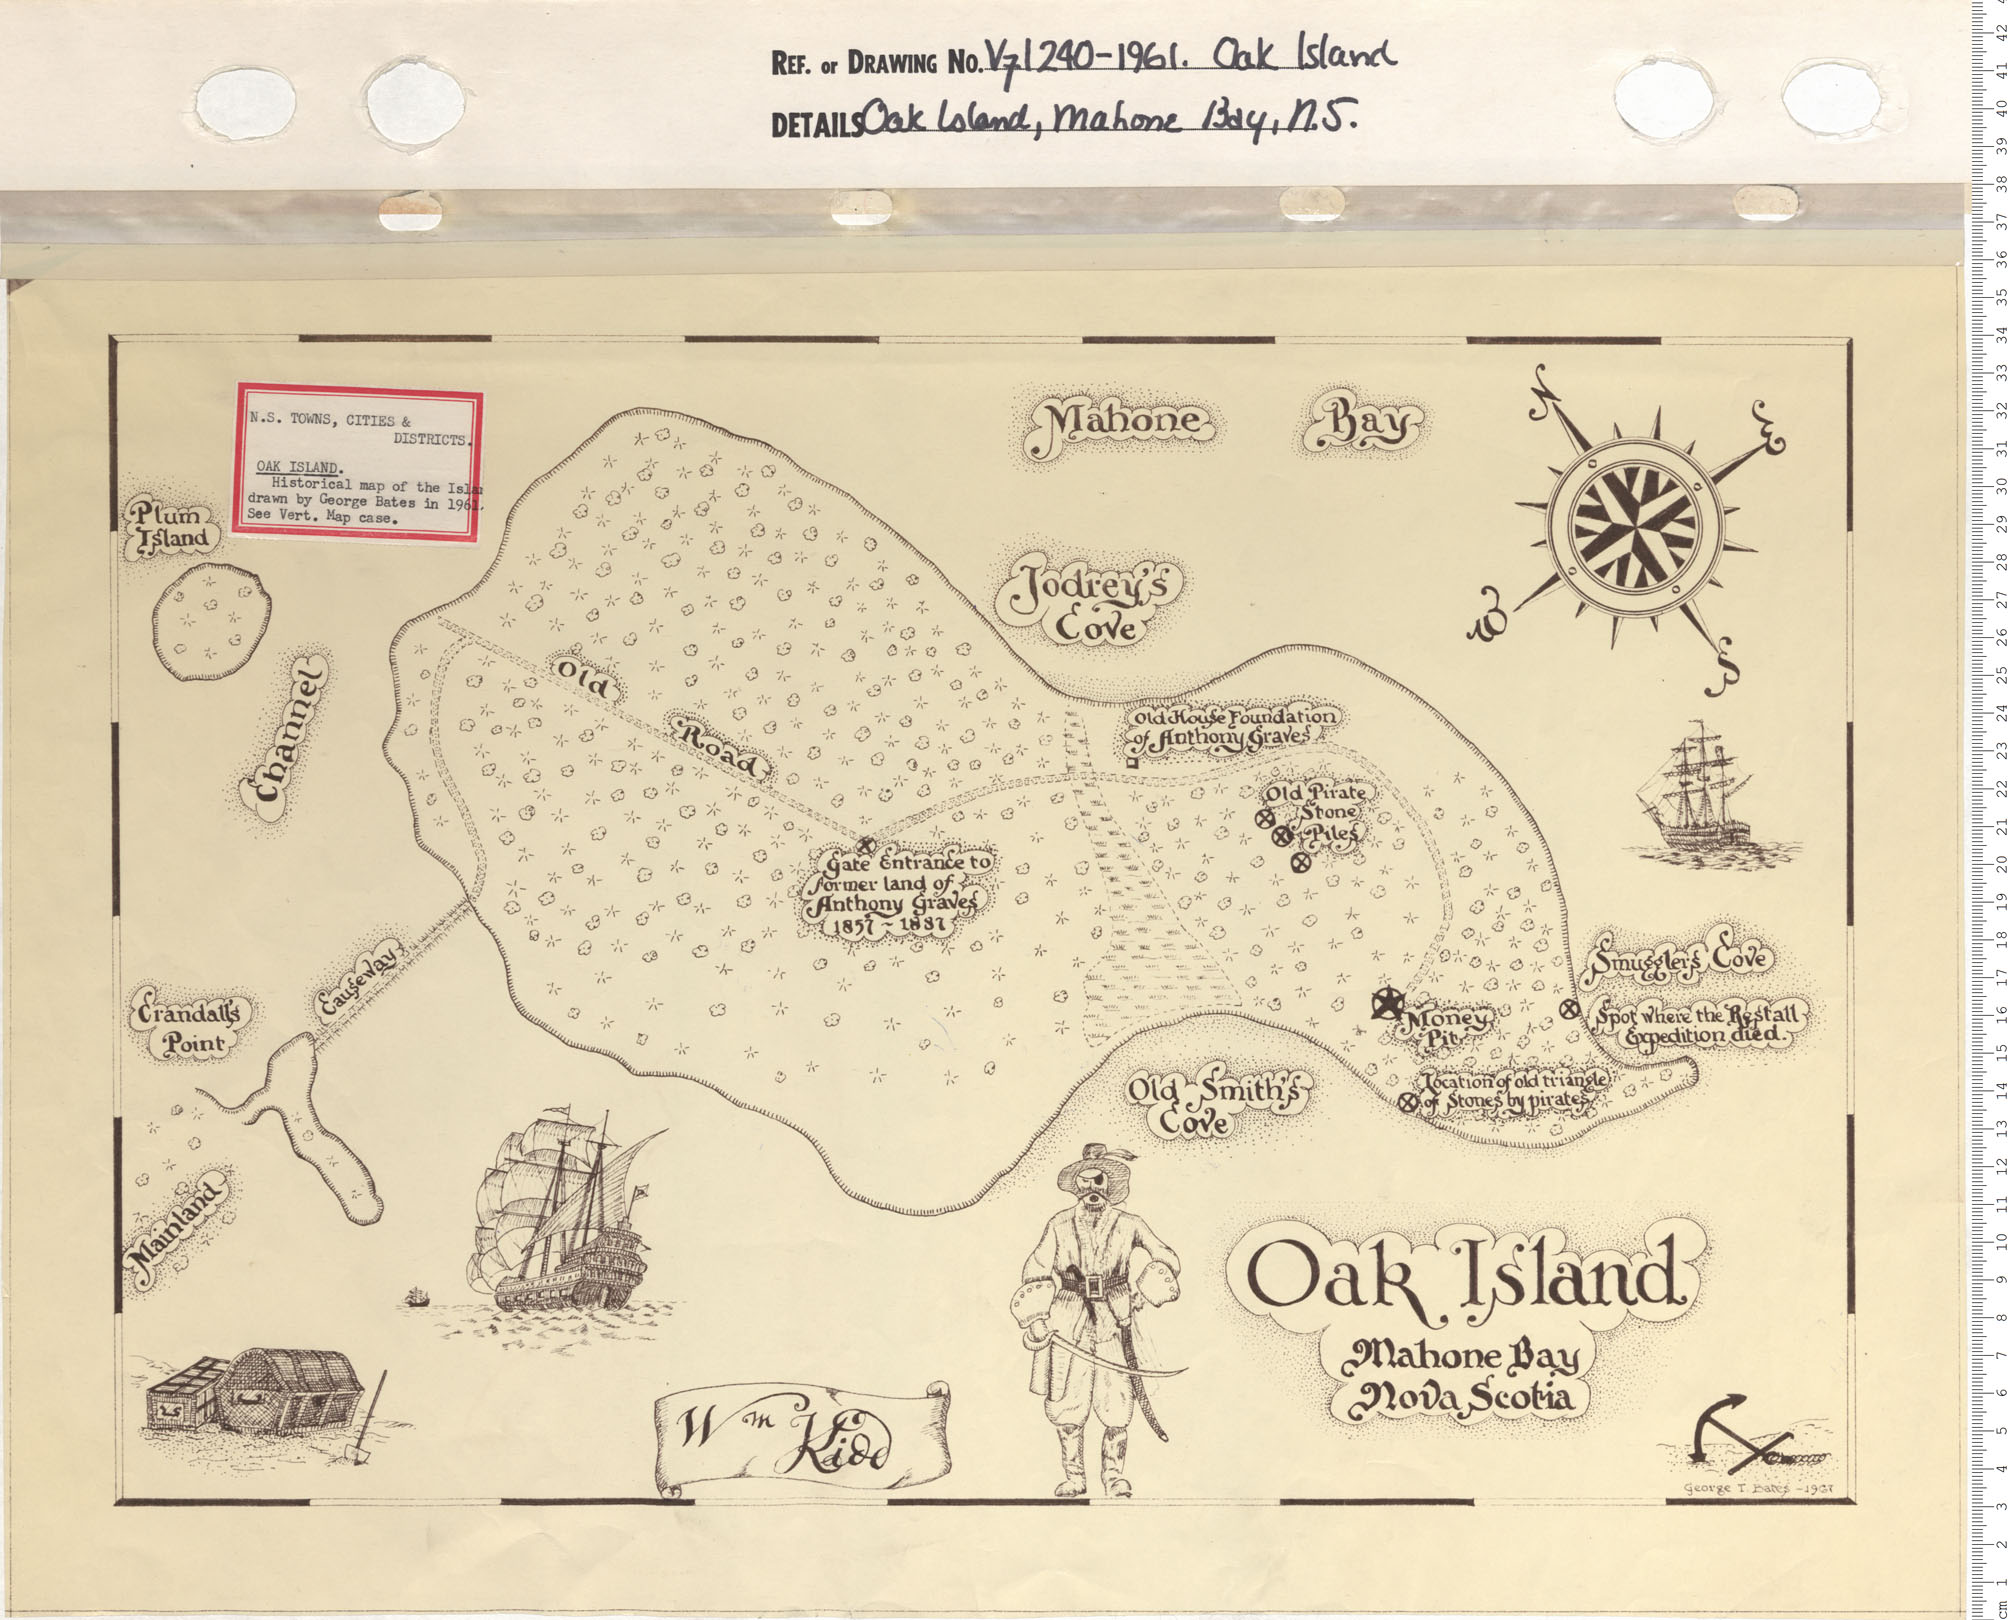 maps : Oak Island, Mahone Bay, N.S.